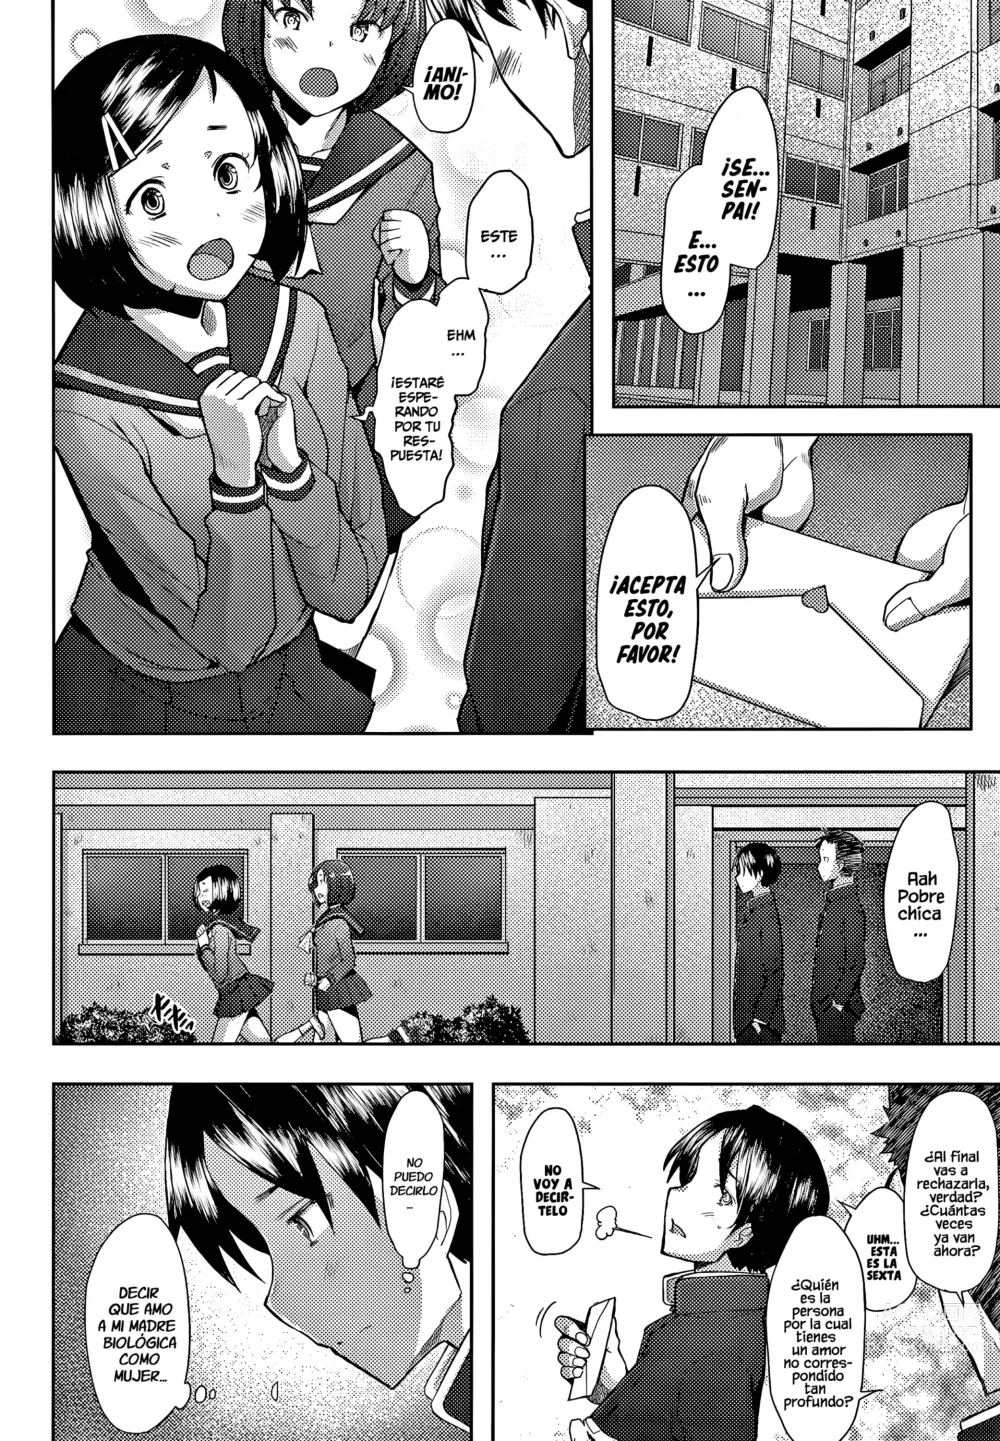 Page 4 of manga Only♀♂Mum